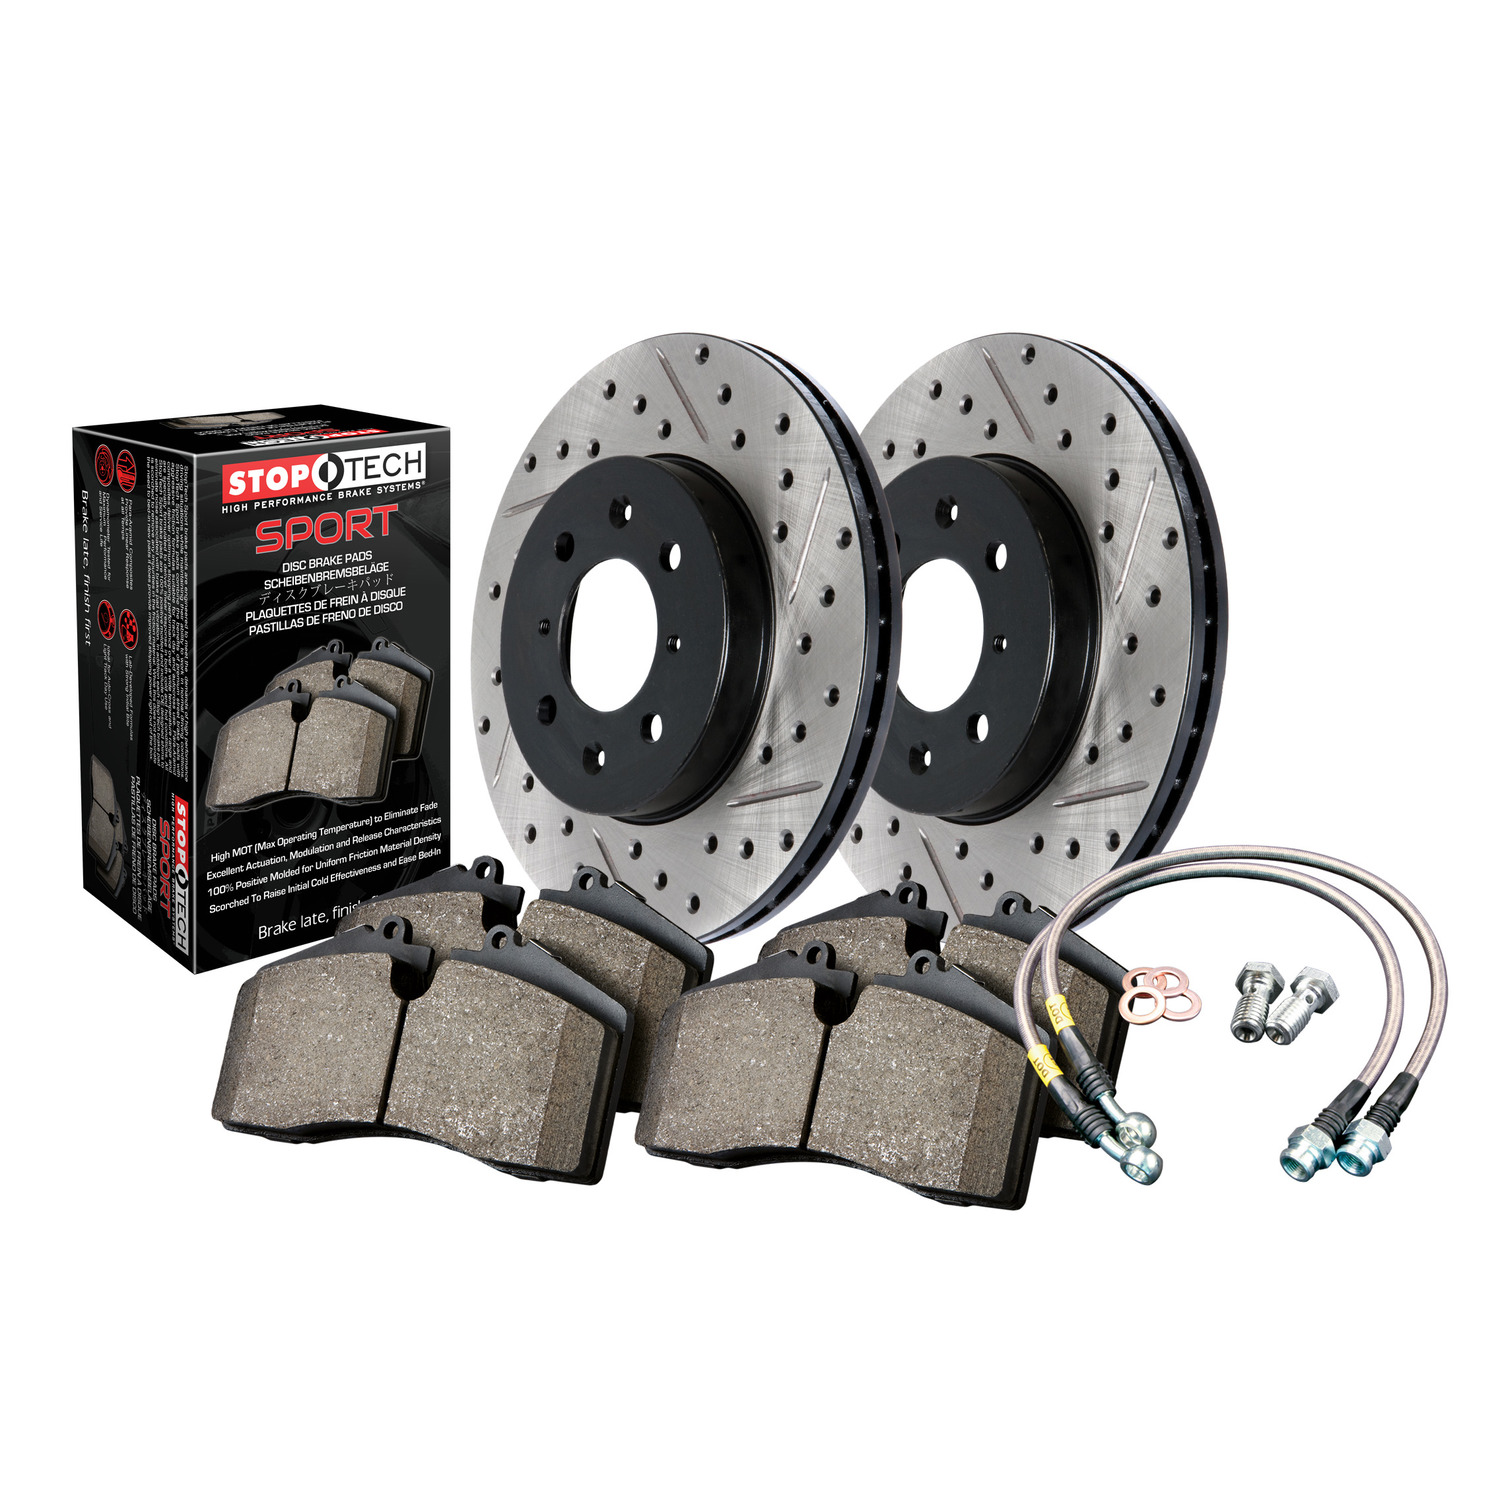 StopTech 978.42000F Disc Brake Upgrade Kit